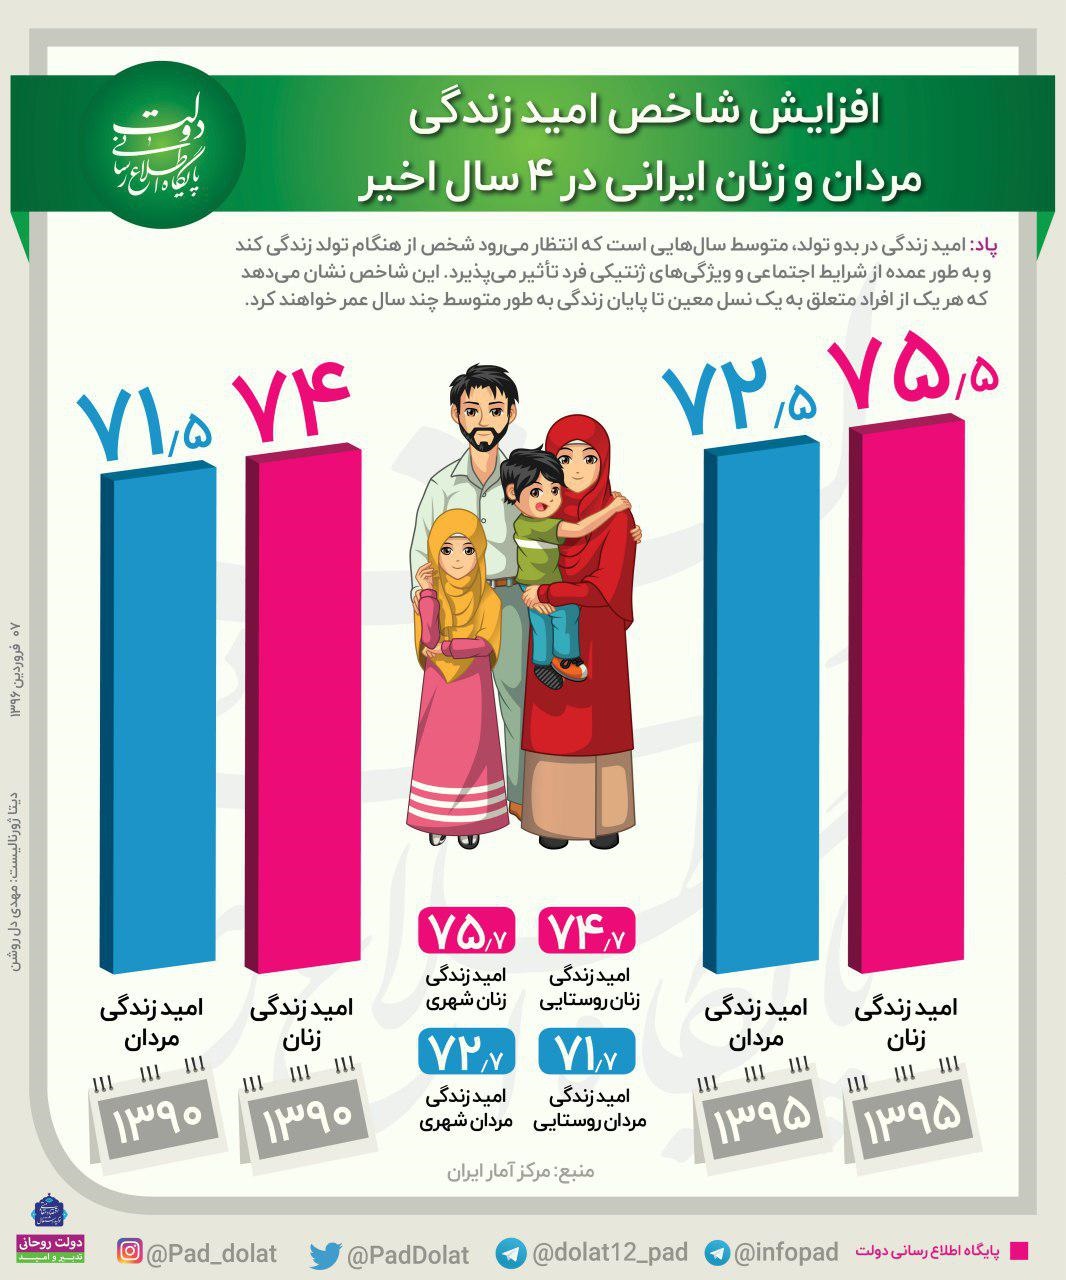 افزایش شاخص امید زندگی مردان و زنان ایرانی در ۴سال اخیر